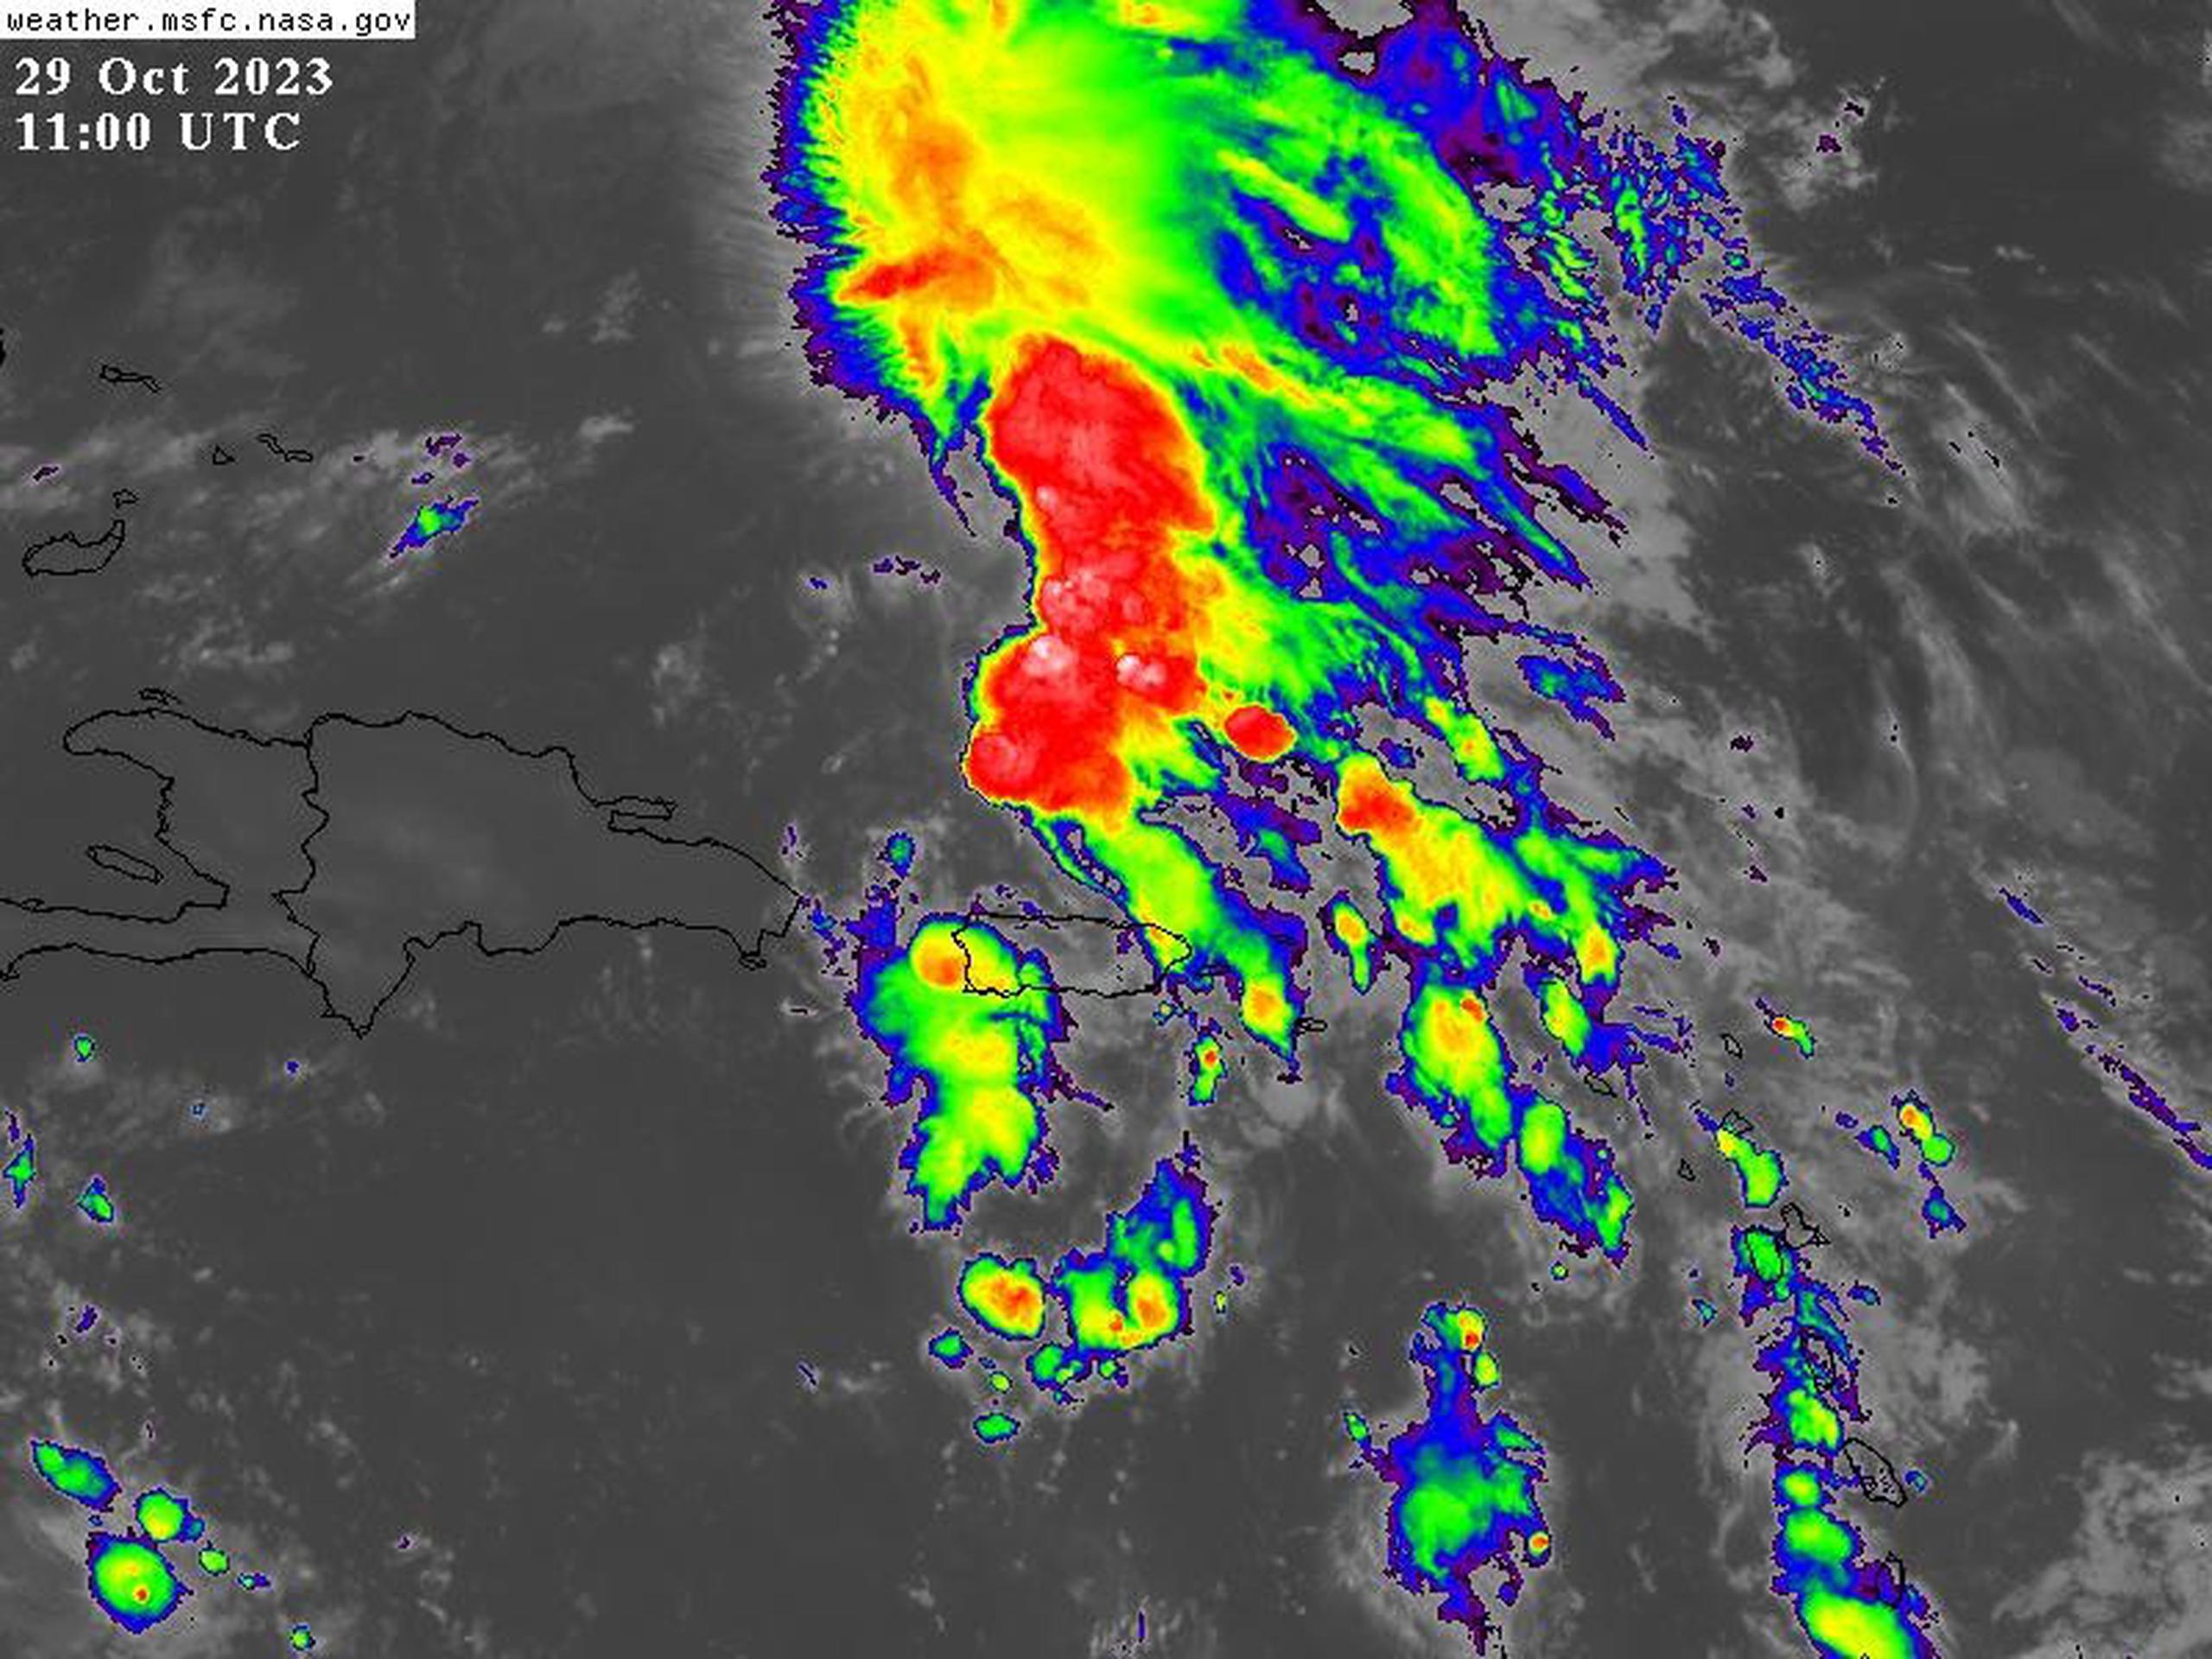 Un sistema de baja presión al nortoeste de Puerto Rico tiene altas probabilidades de desarrollo ciclónico. (NOAA)